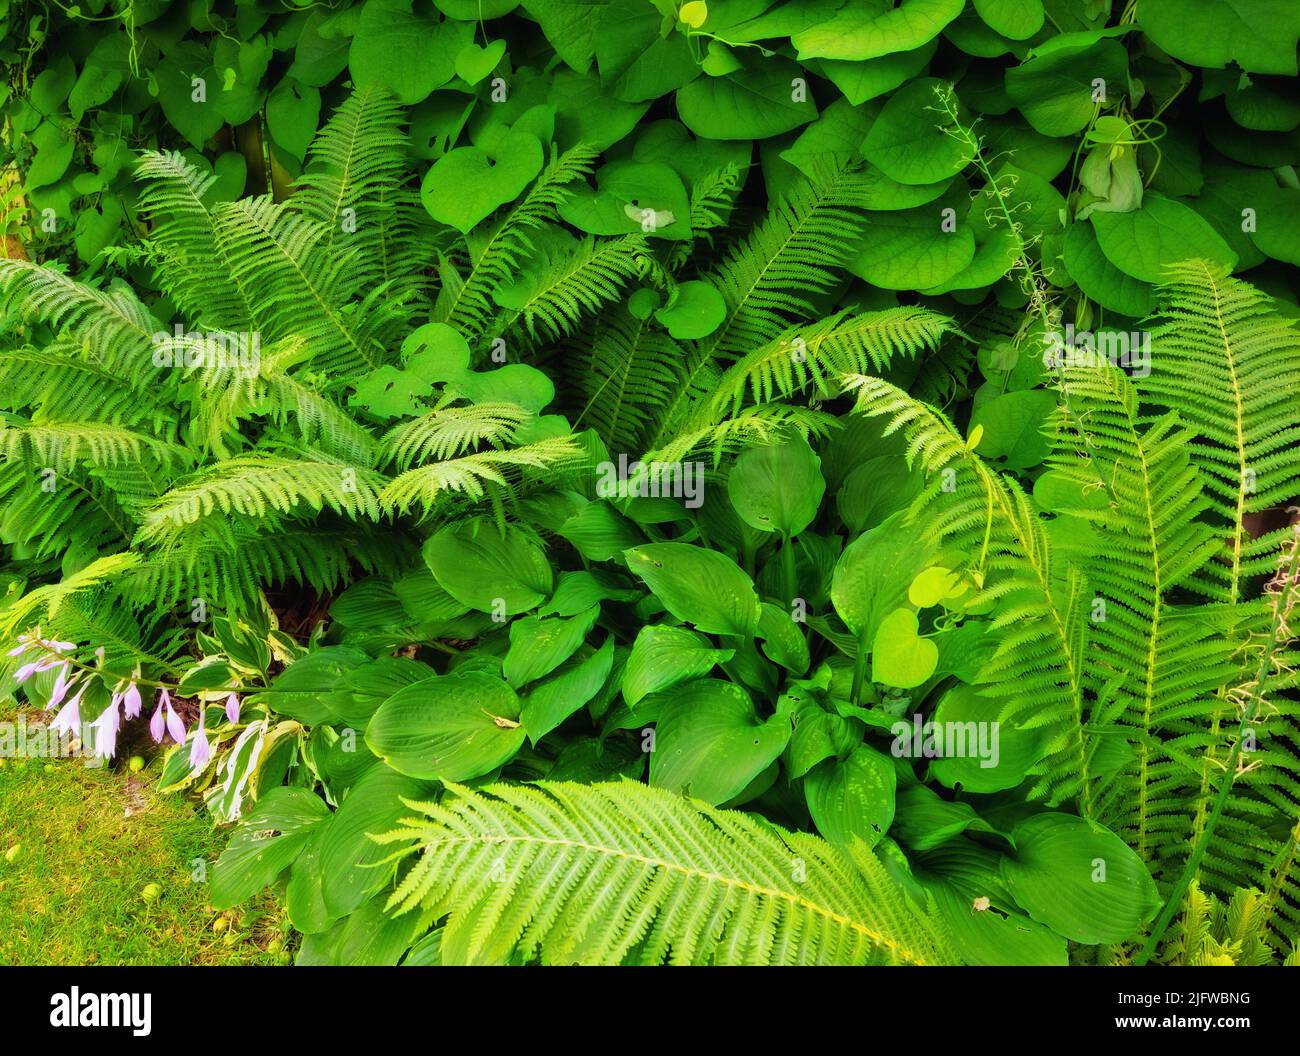 Fern e piante tropicali in giardino in una giornata di sole. Molti generi di arbusti verdi nel cortile con verde fogliame naturale felce floreale e mescolato Foto Stock